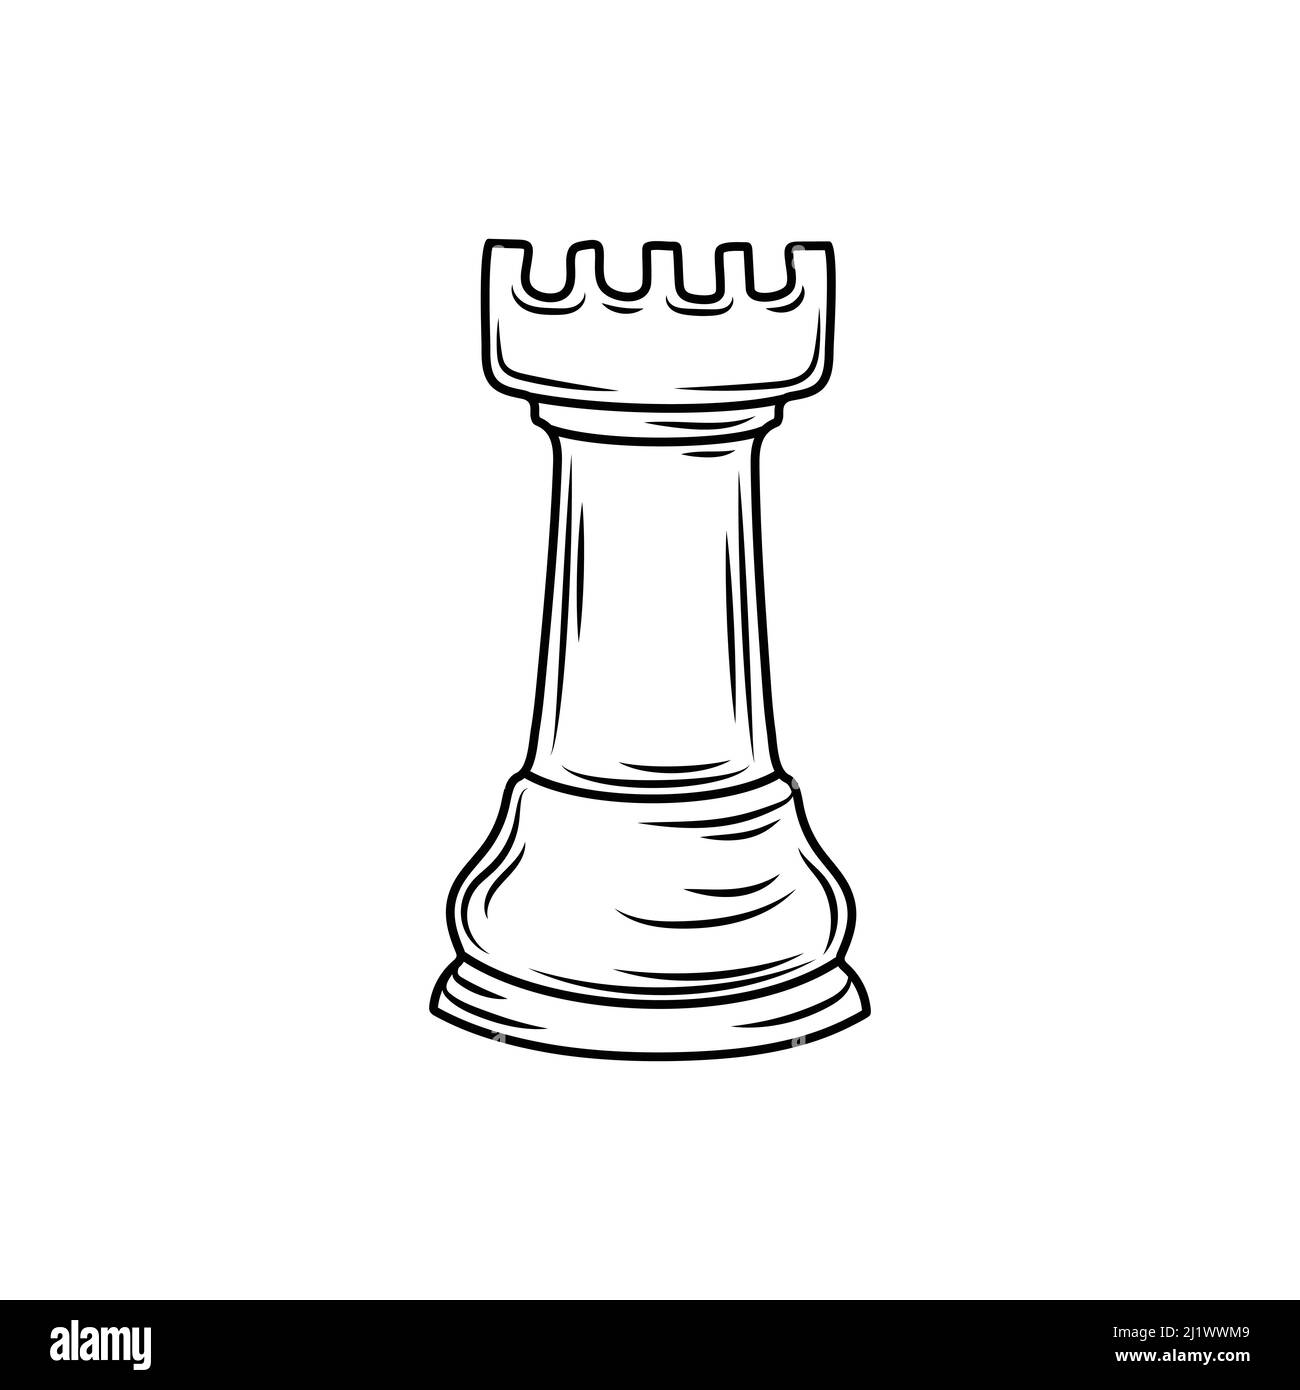 Stück schach schwarzer turm auf schachbrettspiel